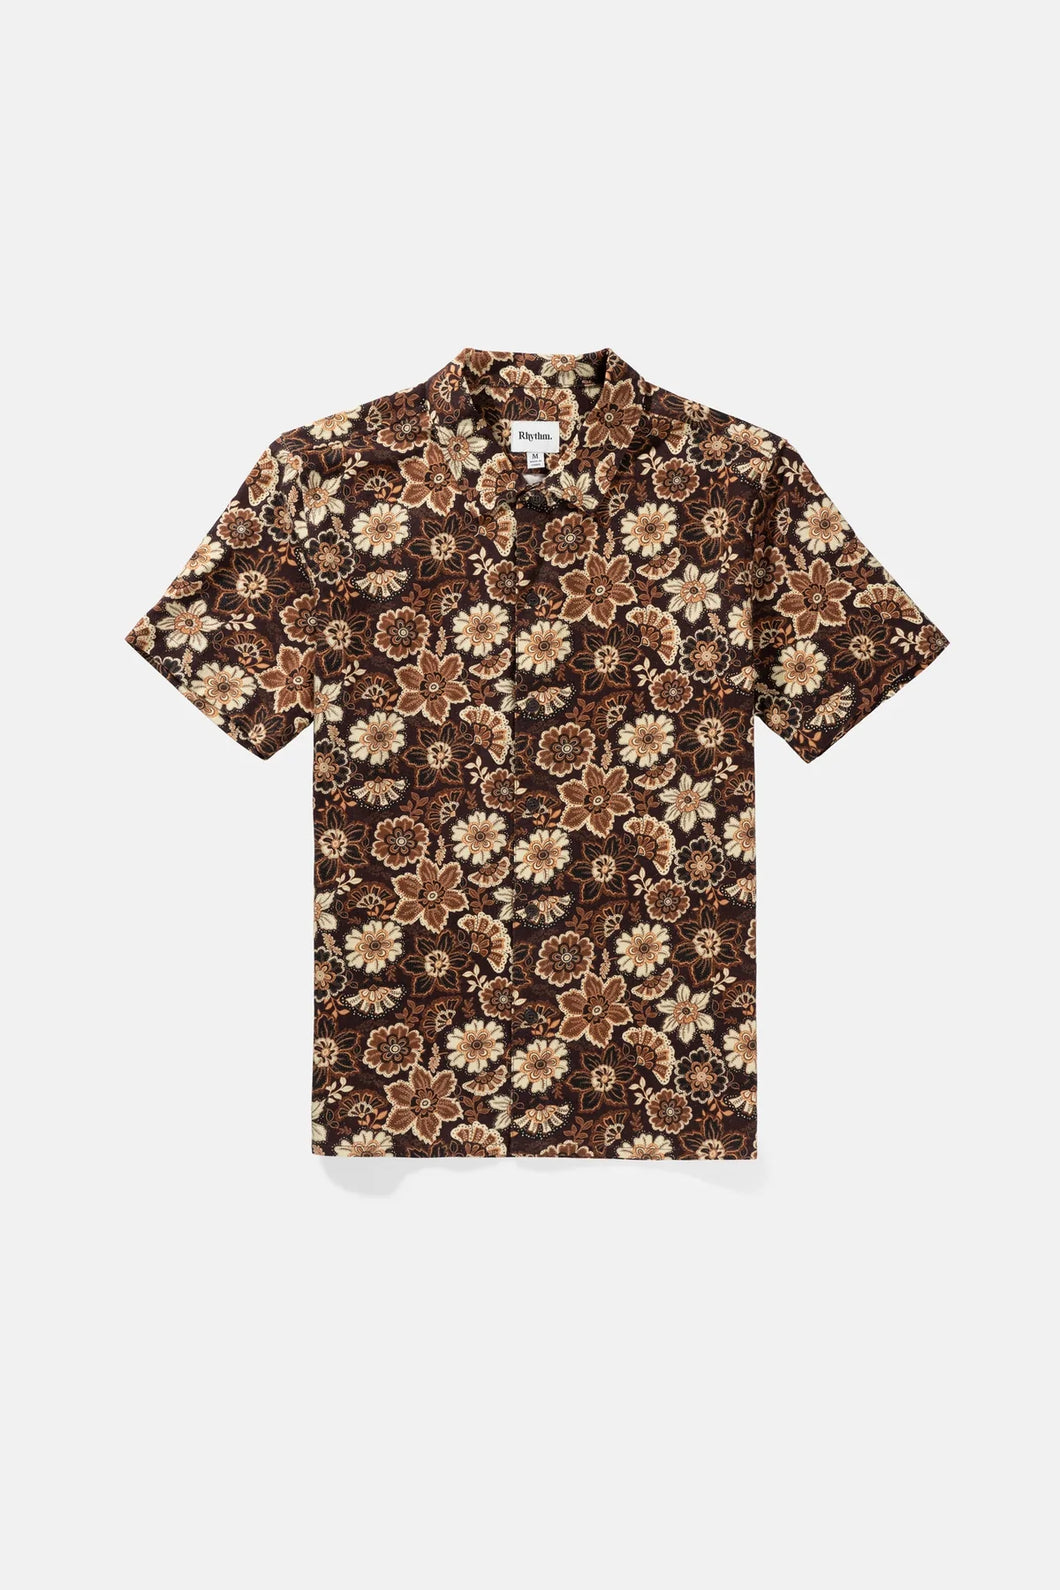 Cantabria SS Shirt (Brown) - Rhythm